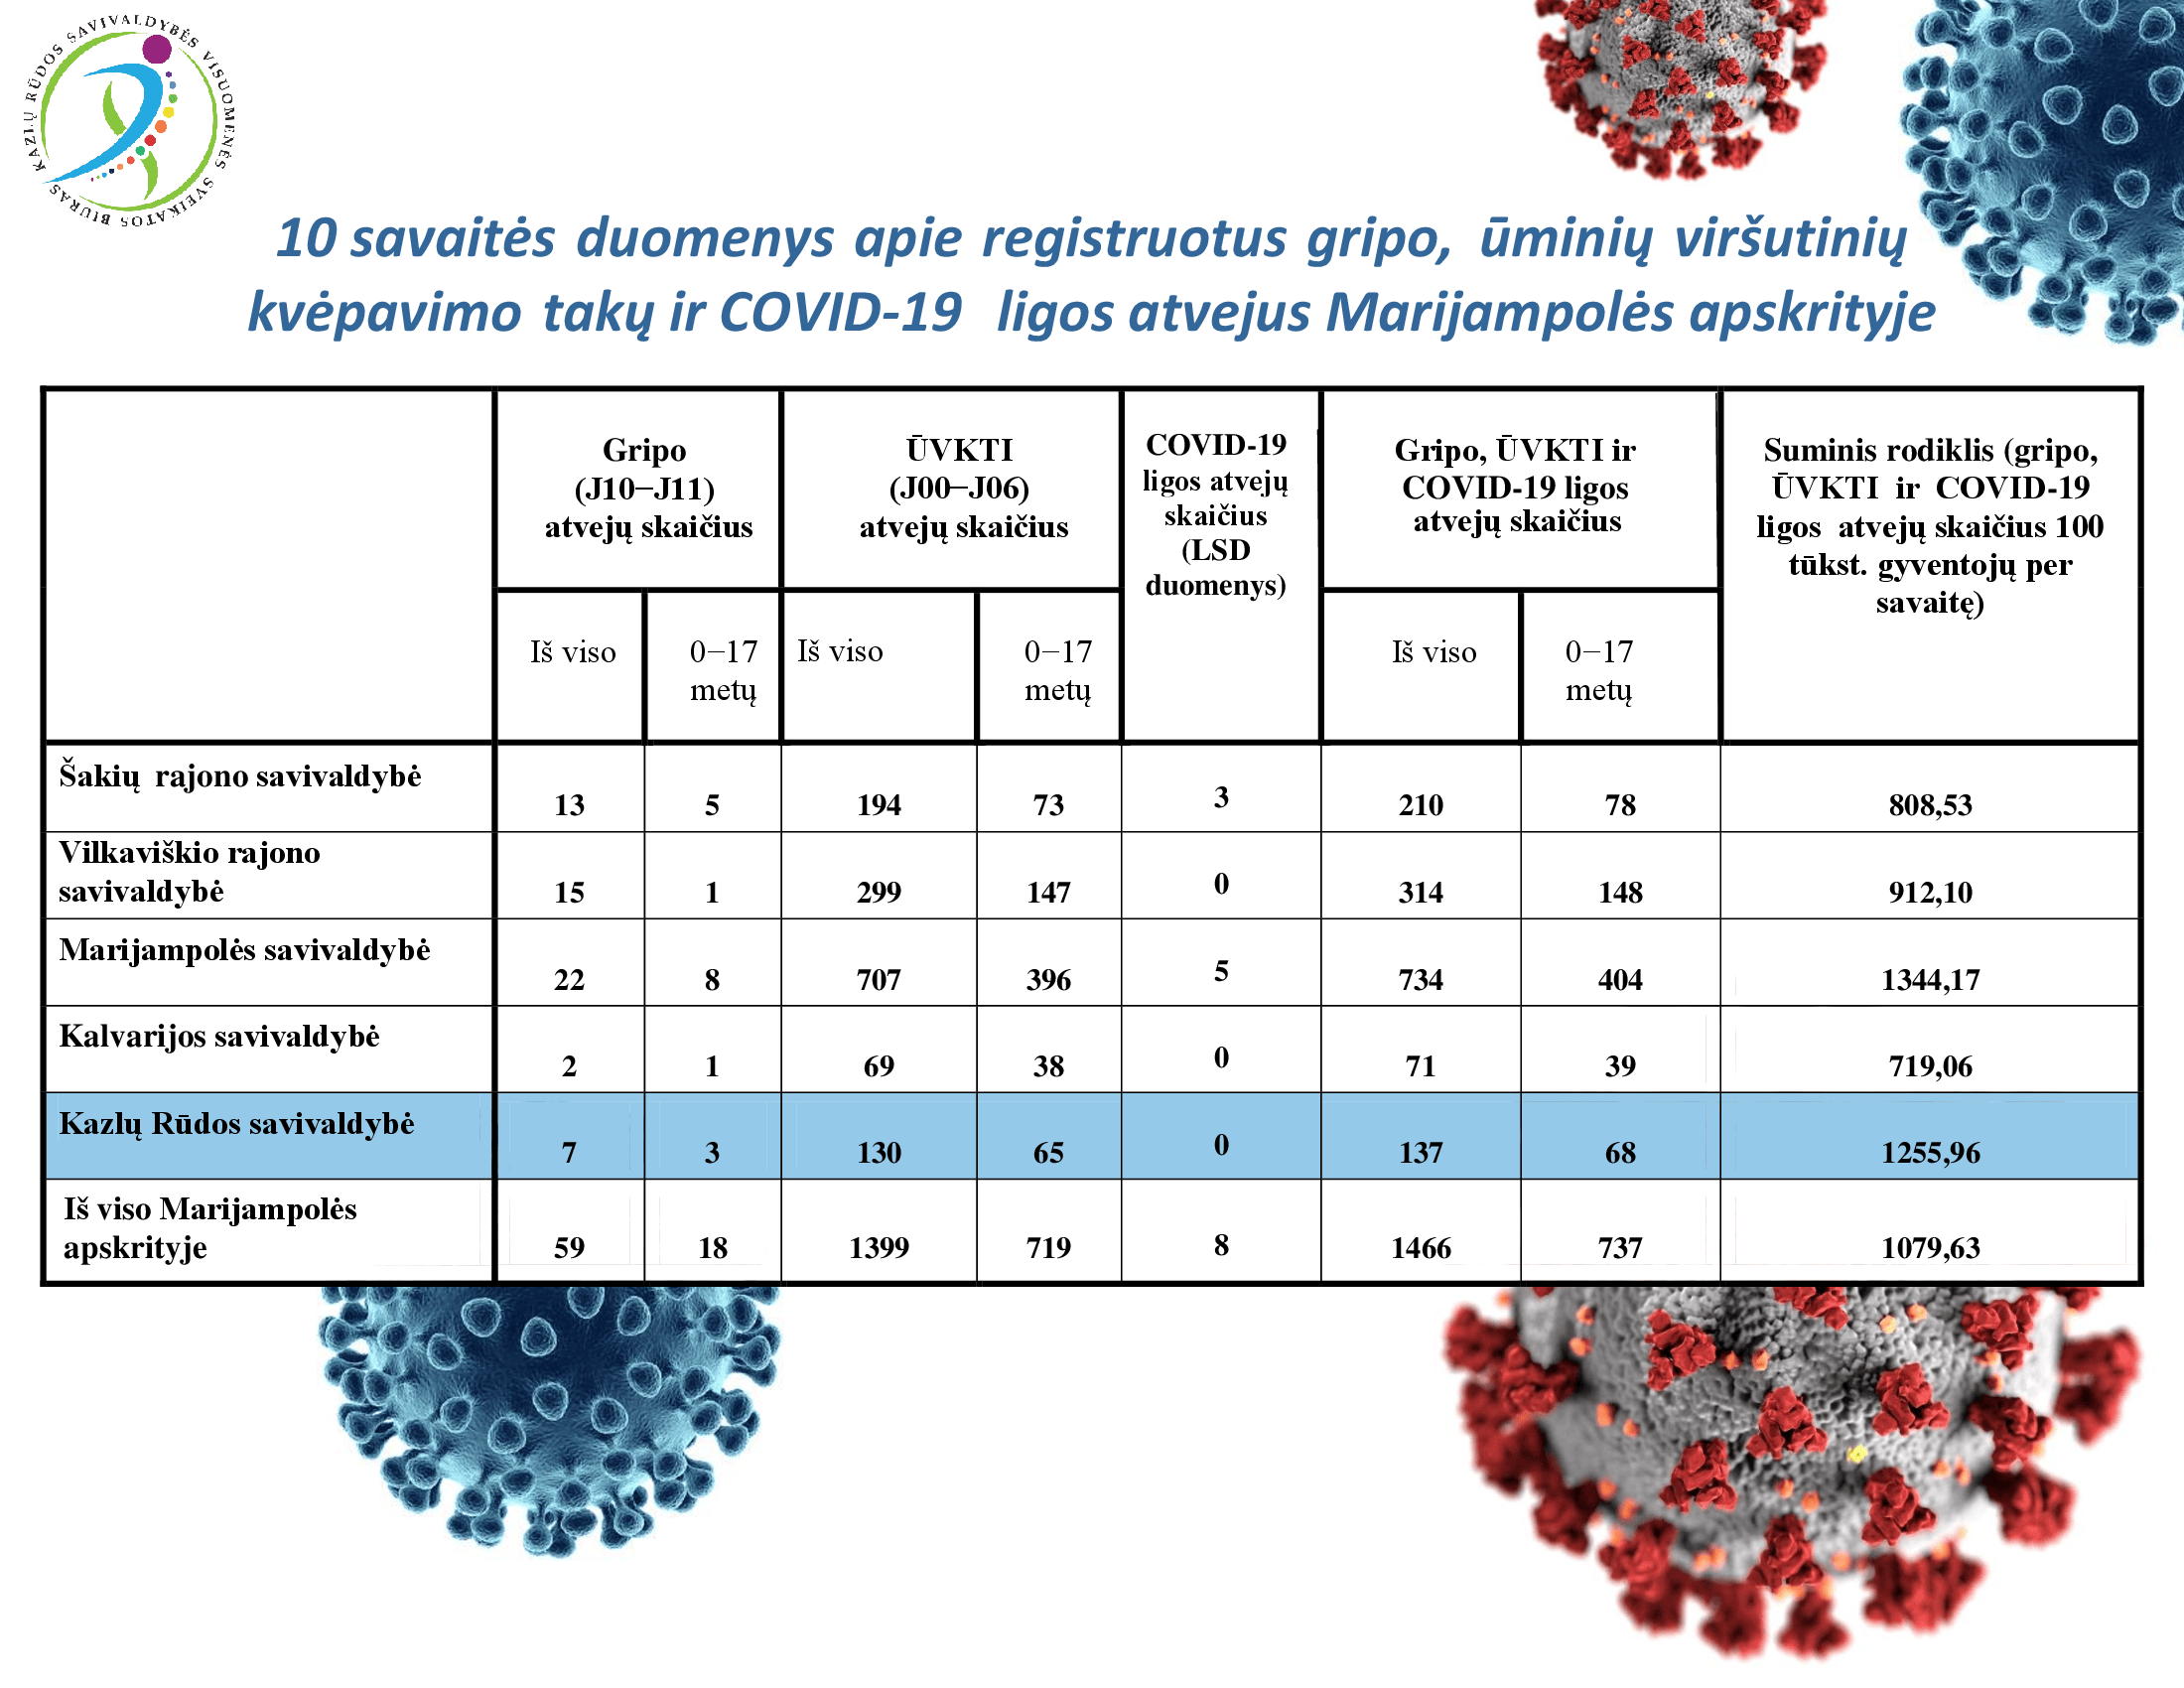 10-savaites-duomenys-apie-registruotus-gripo,-uminiu-virsutiniu-kvepavimo-taku-ir-covid-19-ligos-atvejus-marijampoles-apskrityje-